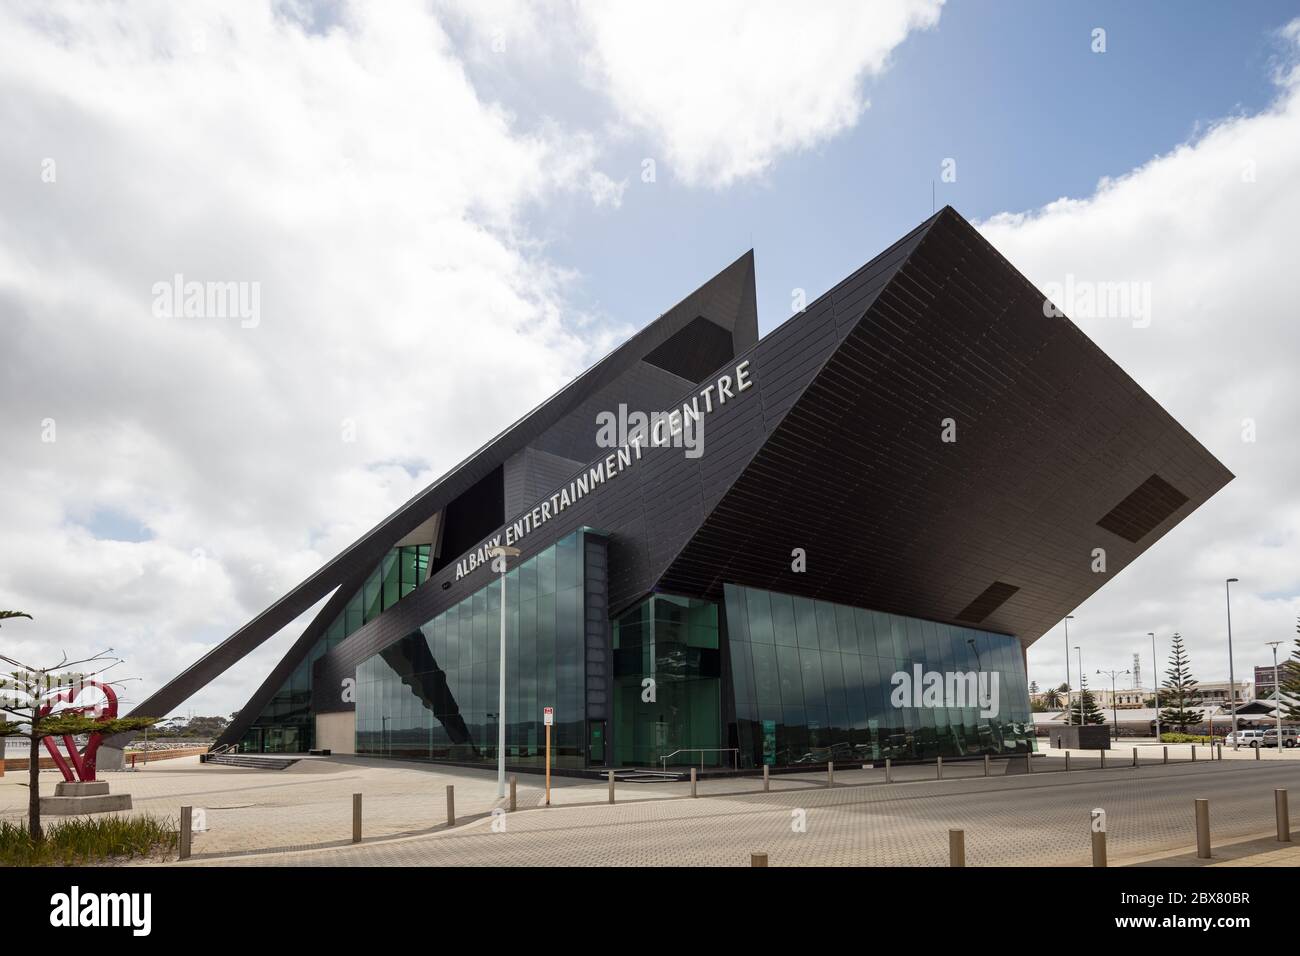 Albany Western Australia 10. November 2019 : Blick auf die moderne Architektur, die das Albany Entertainment Center in Western Australia umfasst Stockfoto